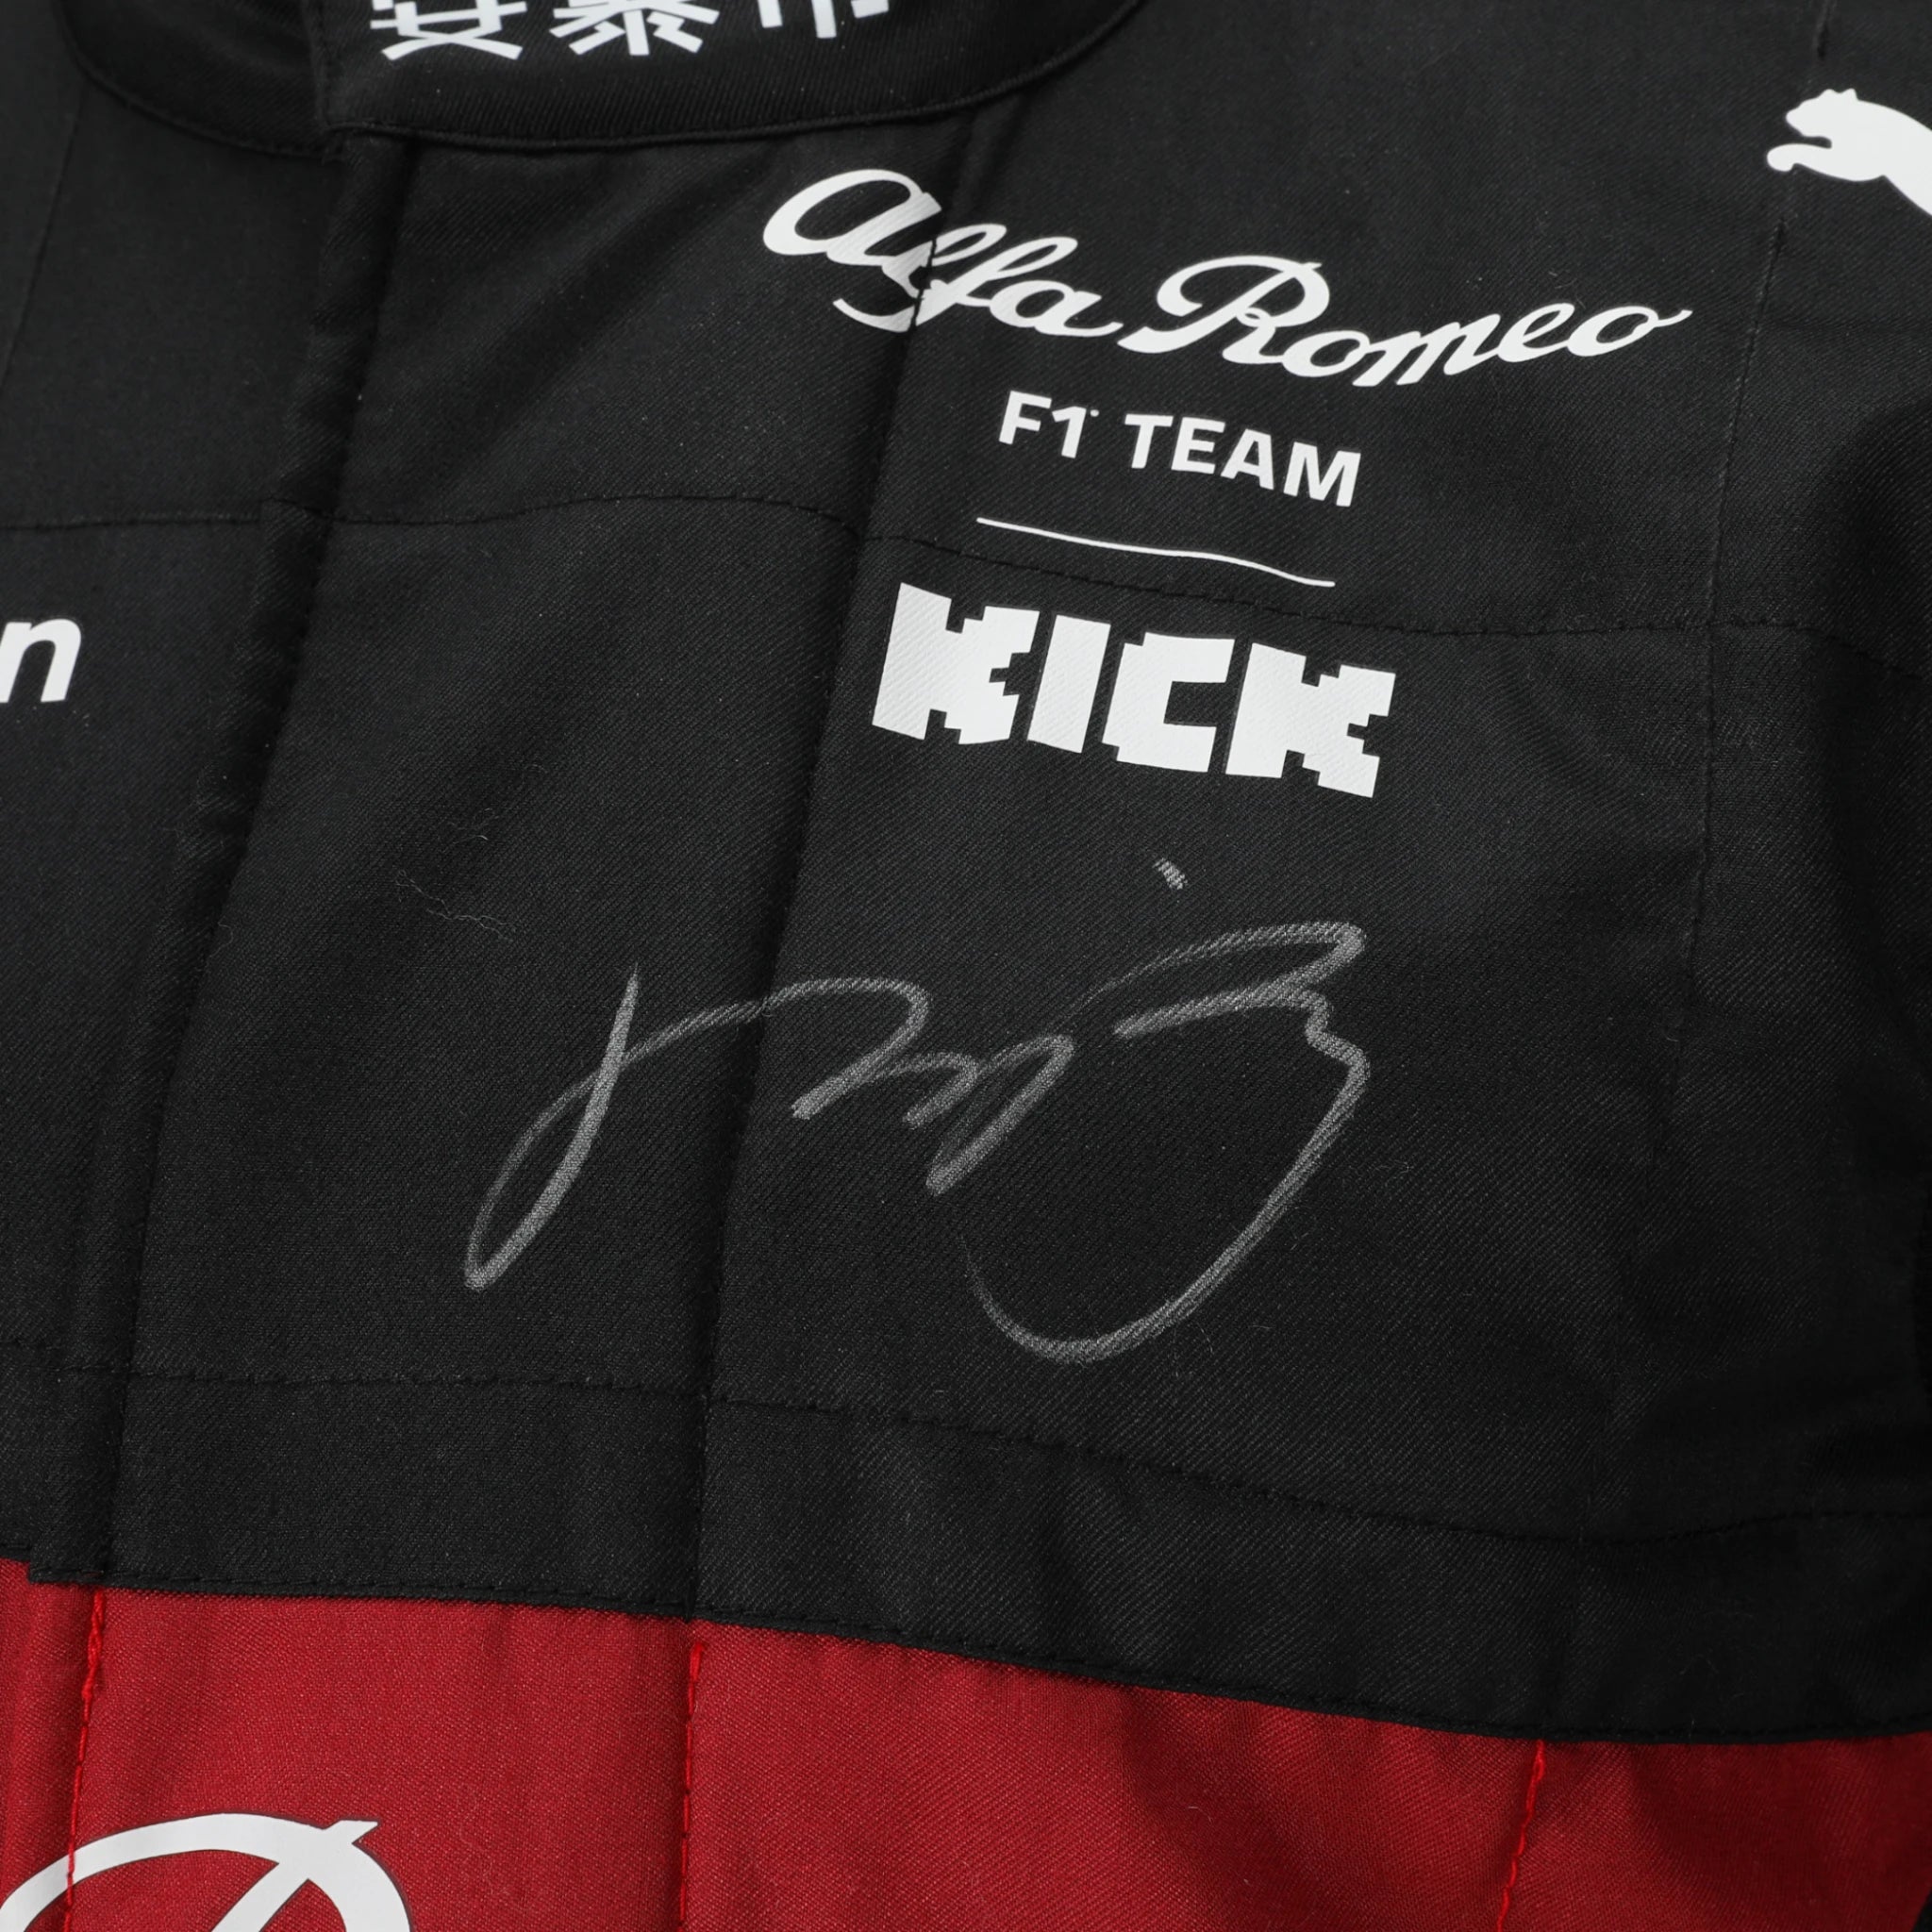 2023 Zhou Guanyu Alfa Romeo F1 Team Racing Suit– Belgian GP